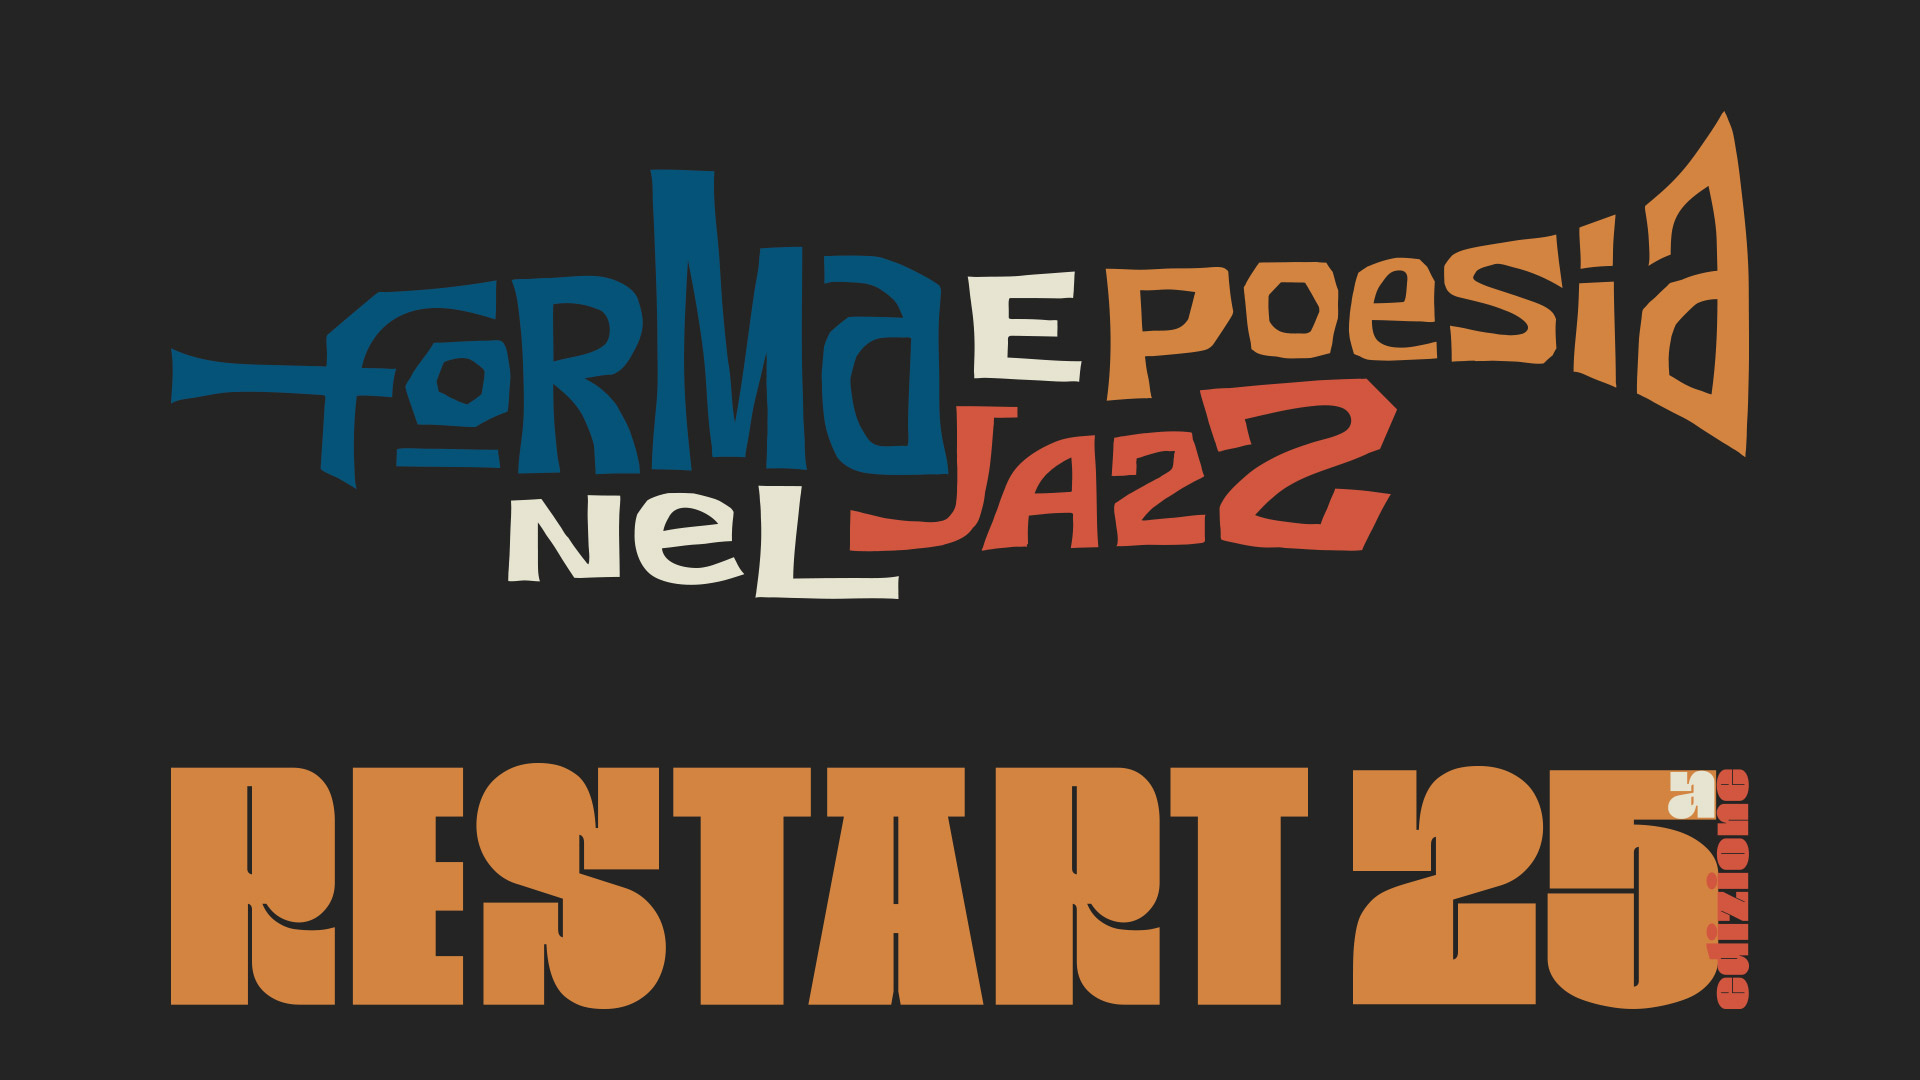 #Forma e Poesia nel Jazz 25a edizione  | 15/19 Settembre 2022 | Restart - Cagliari - Il Lazzaretto - Parco Monte Claro - Basilica San Saturnino